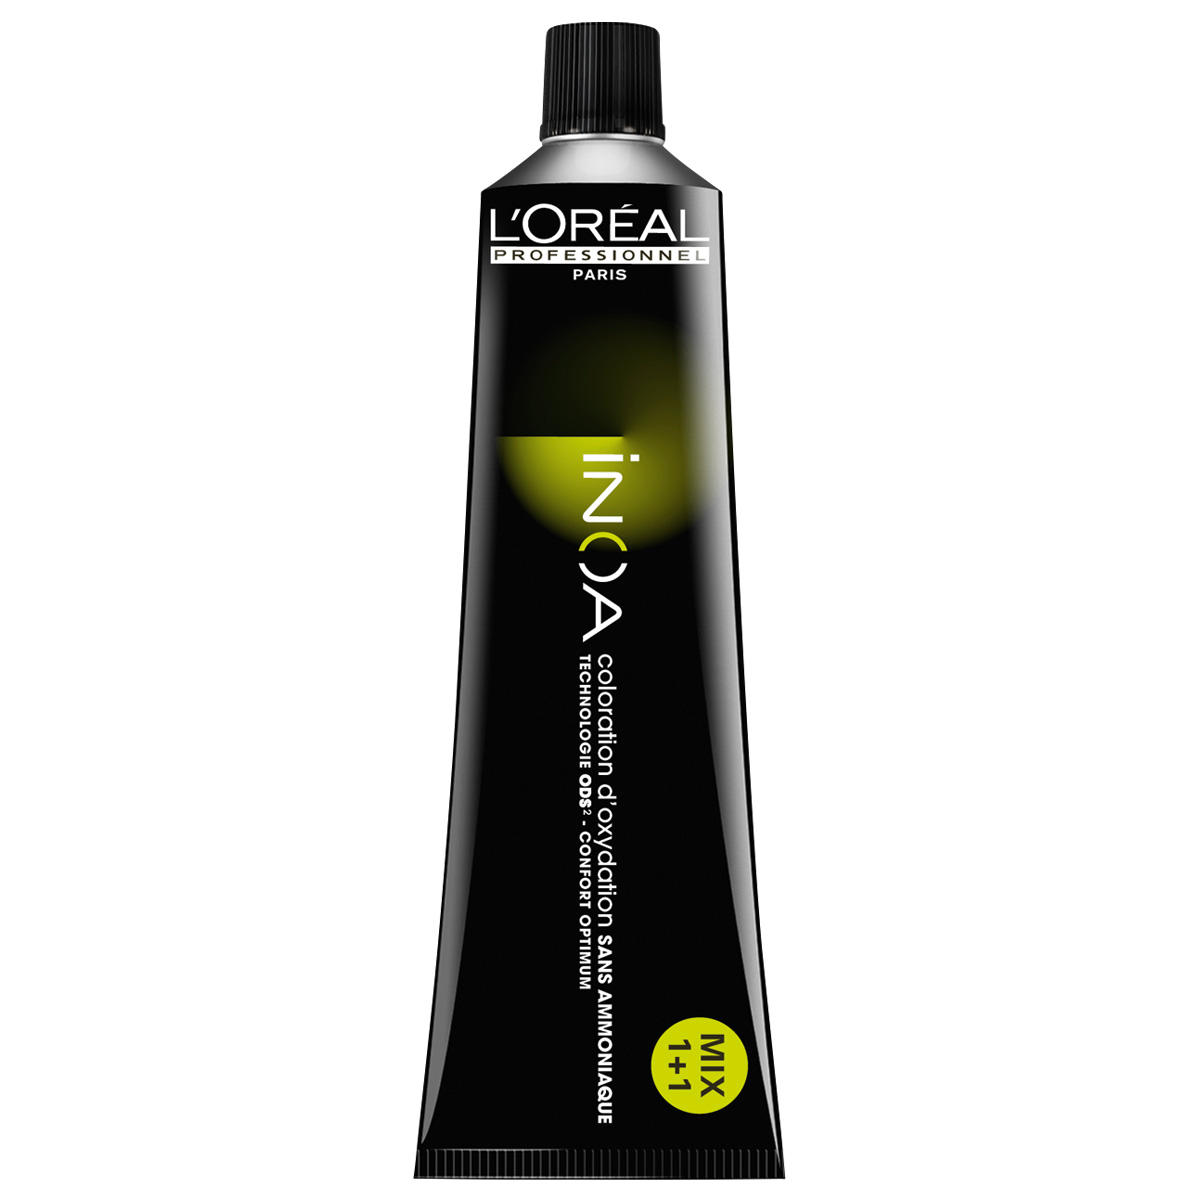 L'Oréal Professionnel Paris Coloration 6,40 Rubio oscuro cobrizo intensivo, tubo 60 ml